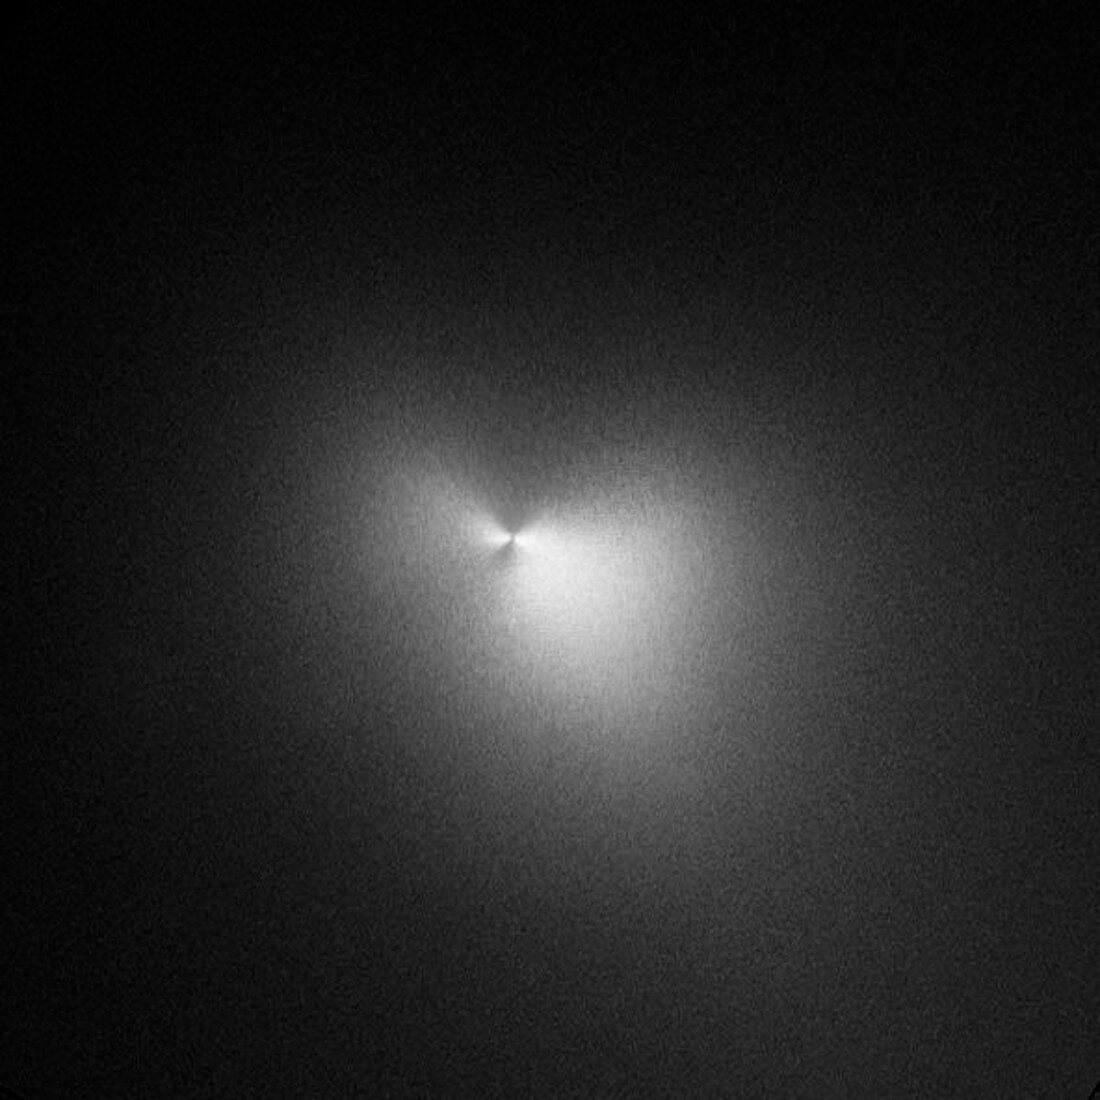 Comet Holmes,November 2007